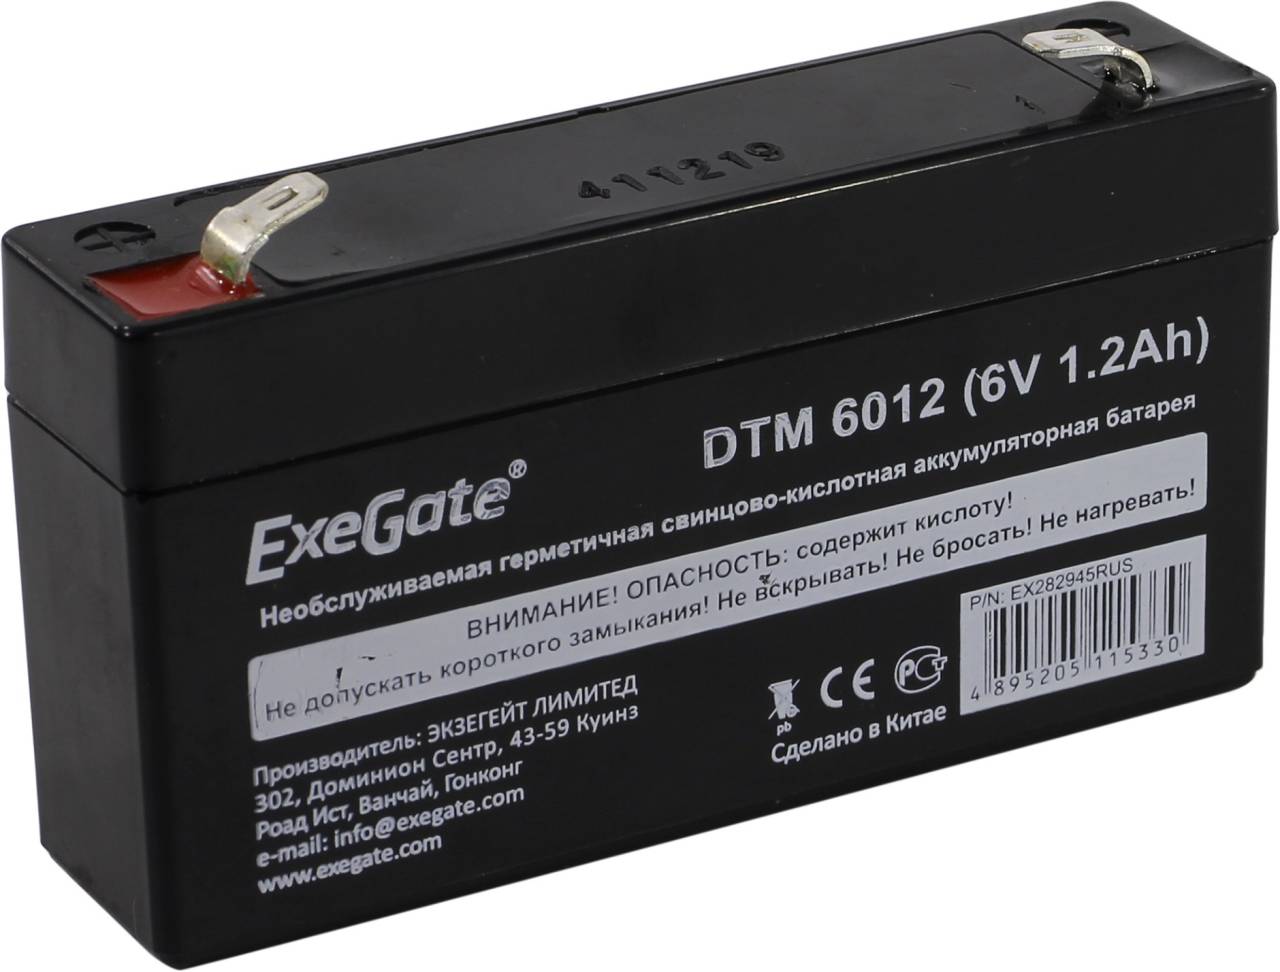   Exegate DTM 6012 (6V, 1.2Ah)  UPS [EX282945RUS]